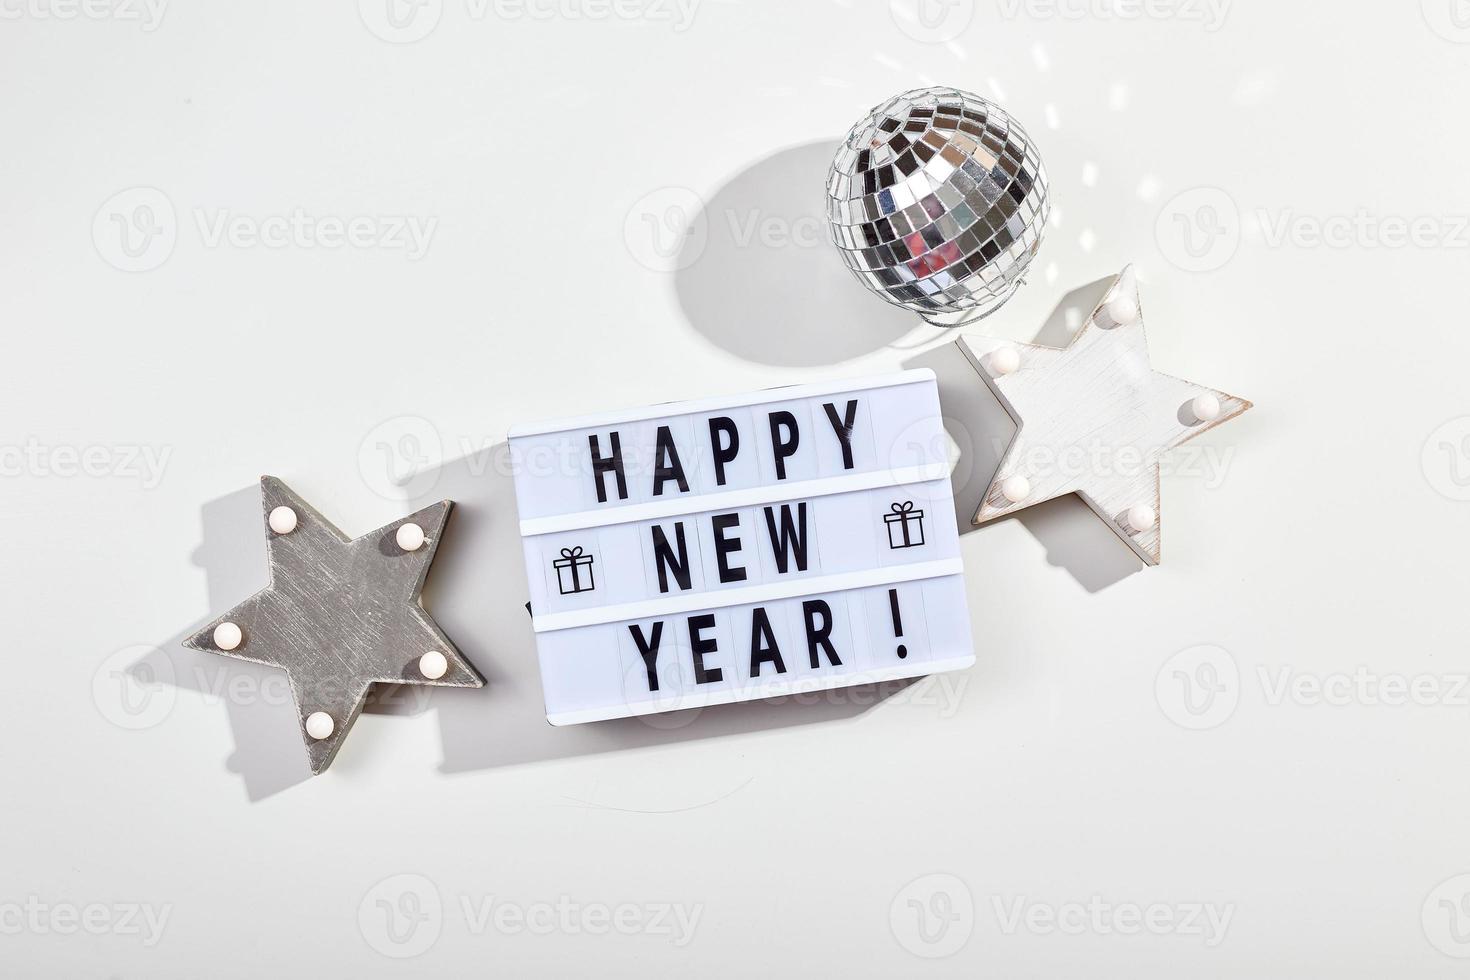 inscripción de caja de luz feliz año nuevo, bola de discoteca espejada y decoraciones de estrellas de madera foto